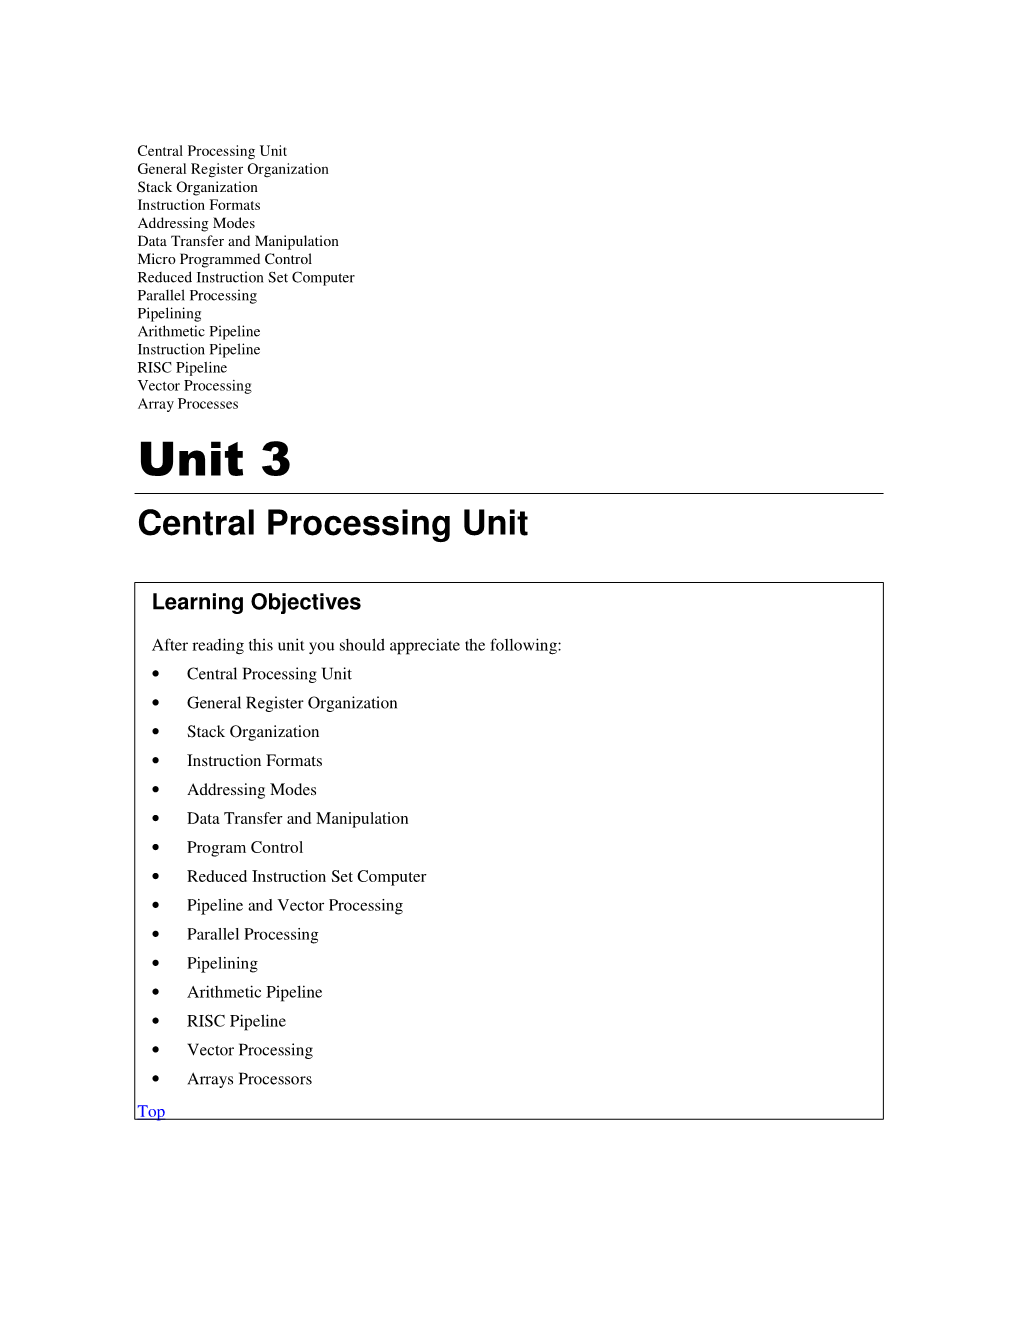 Unit 3 Central Processing Unit